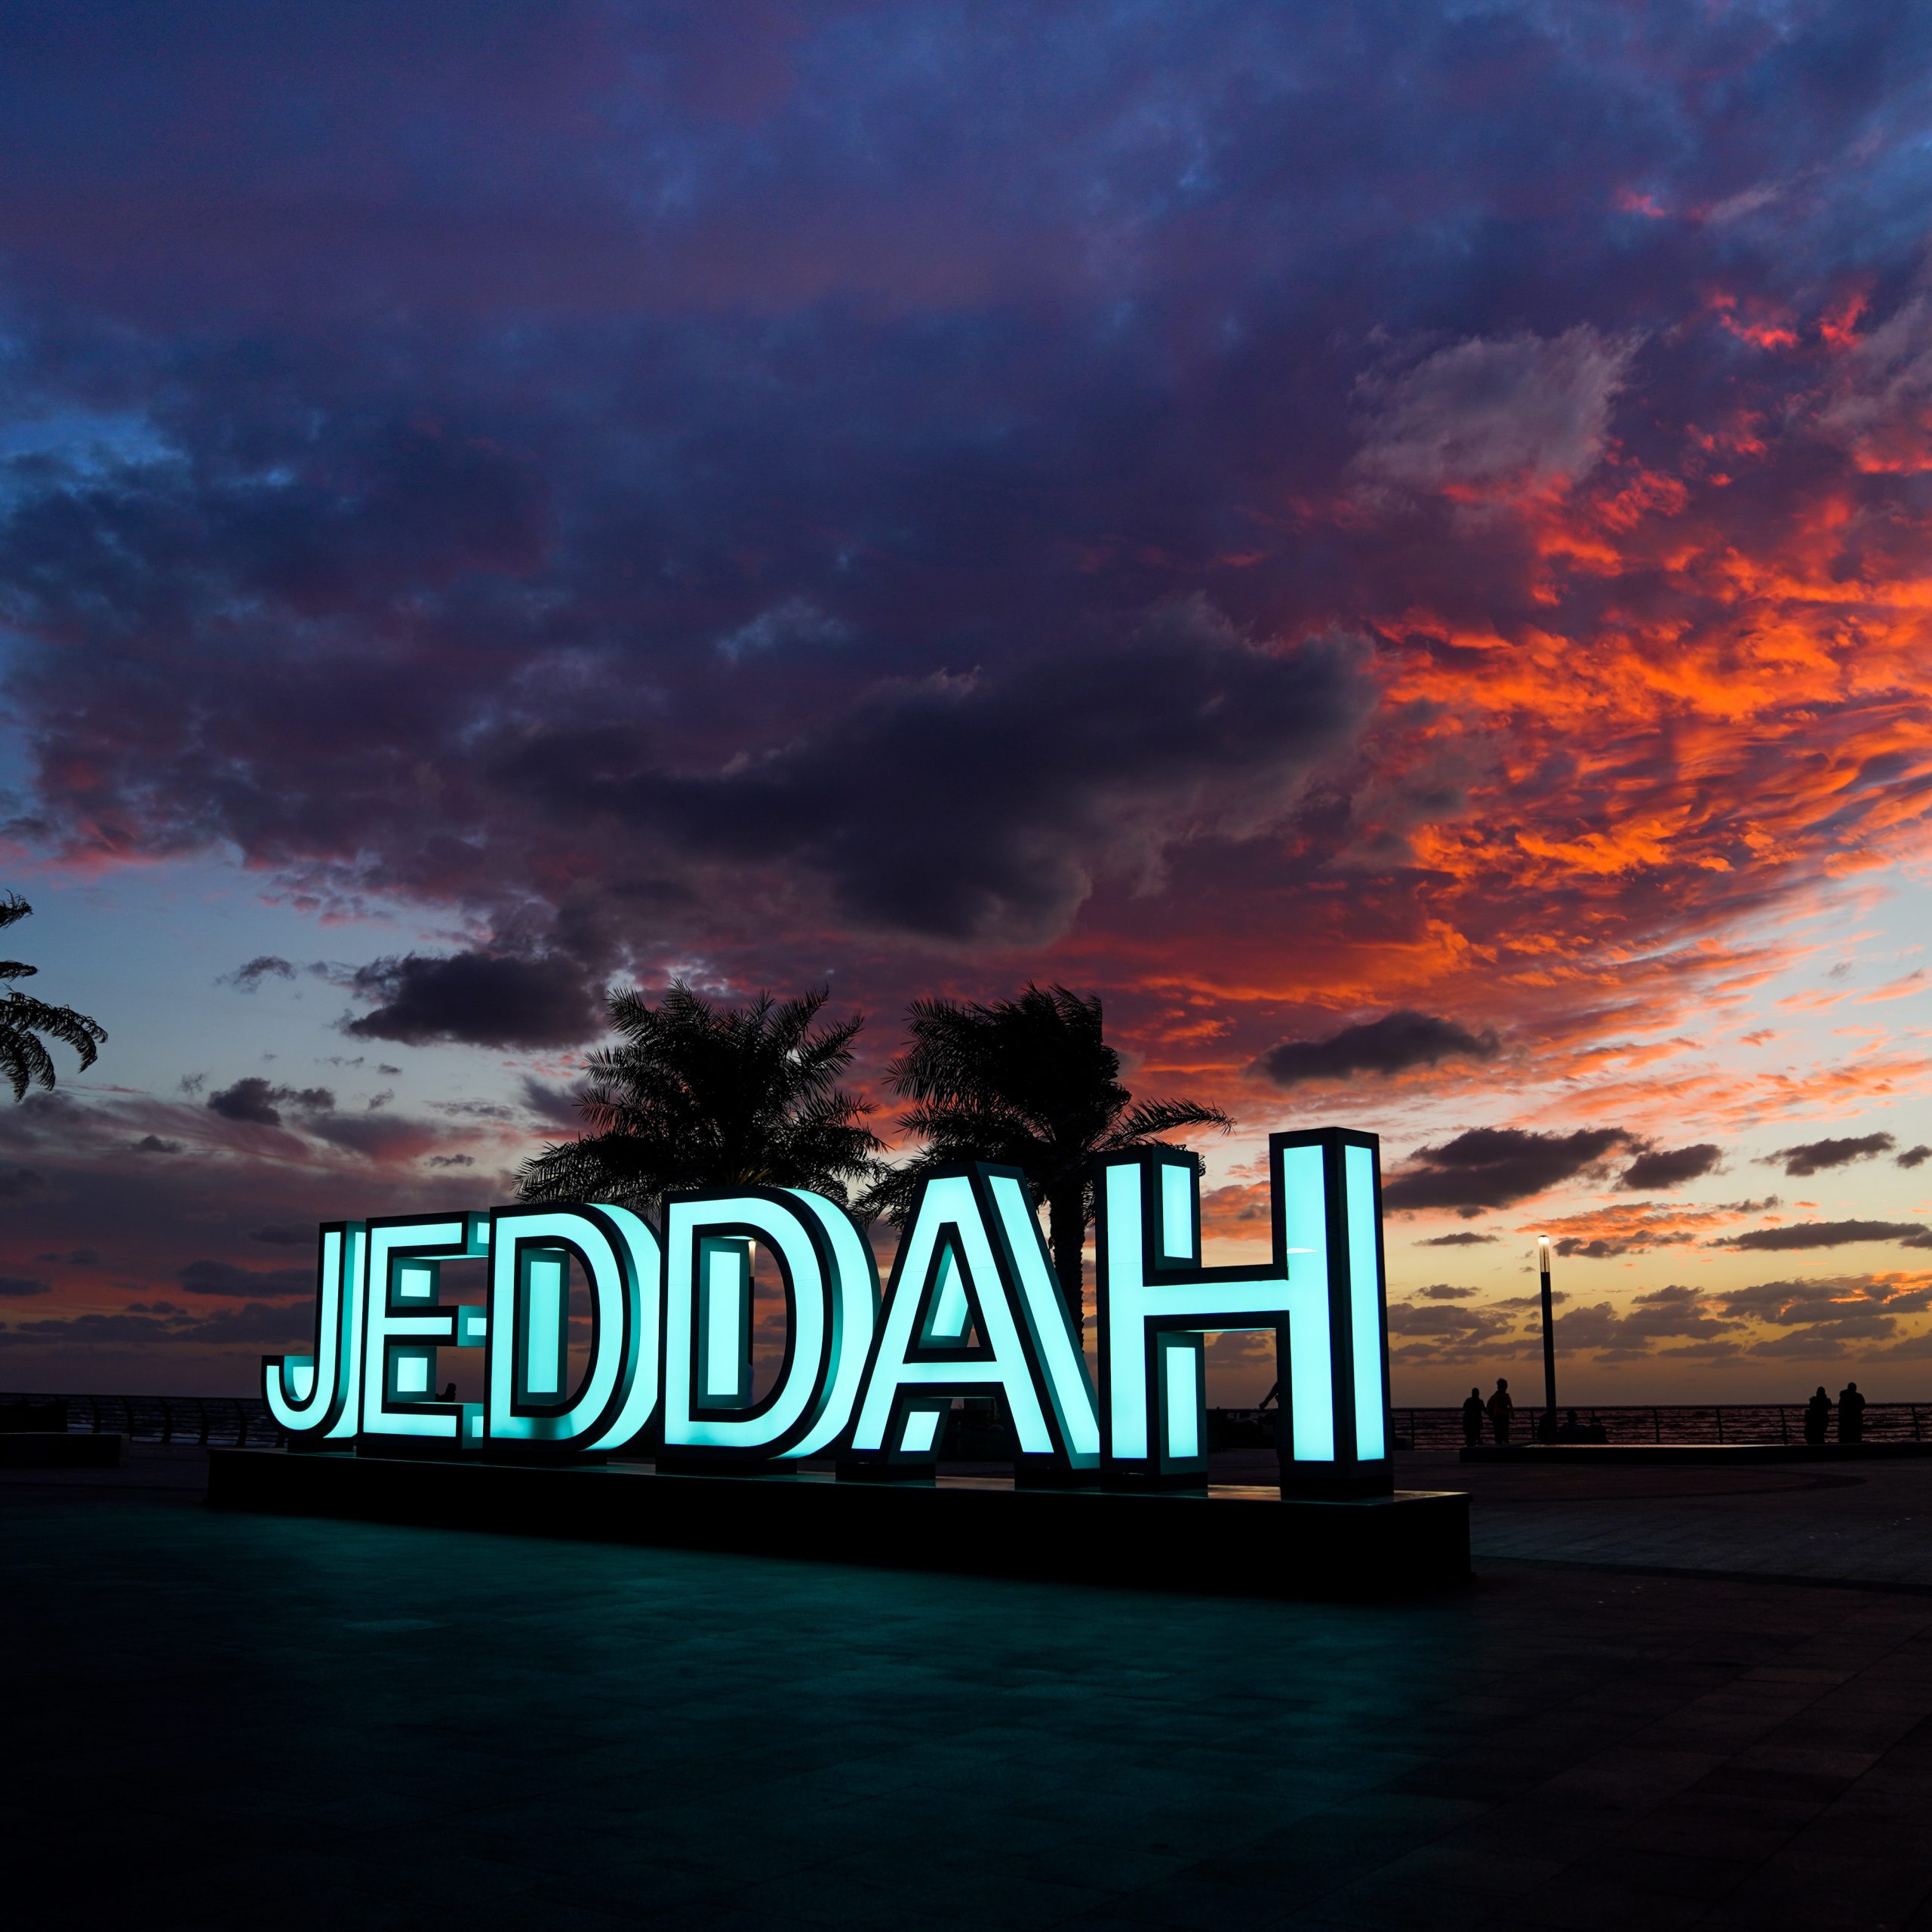 أهم المعالم والأنشطة السياحية في مدينة جدة